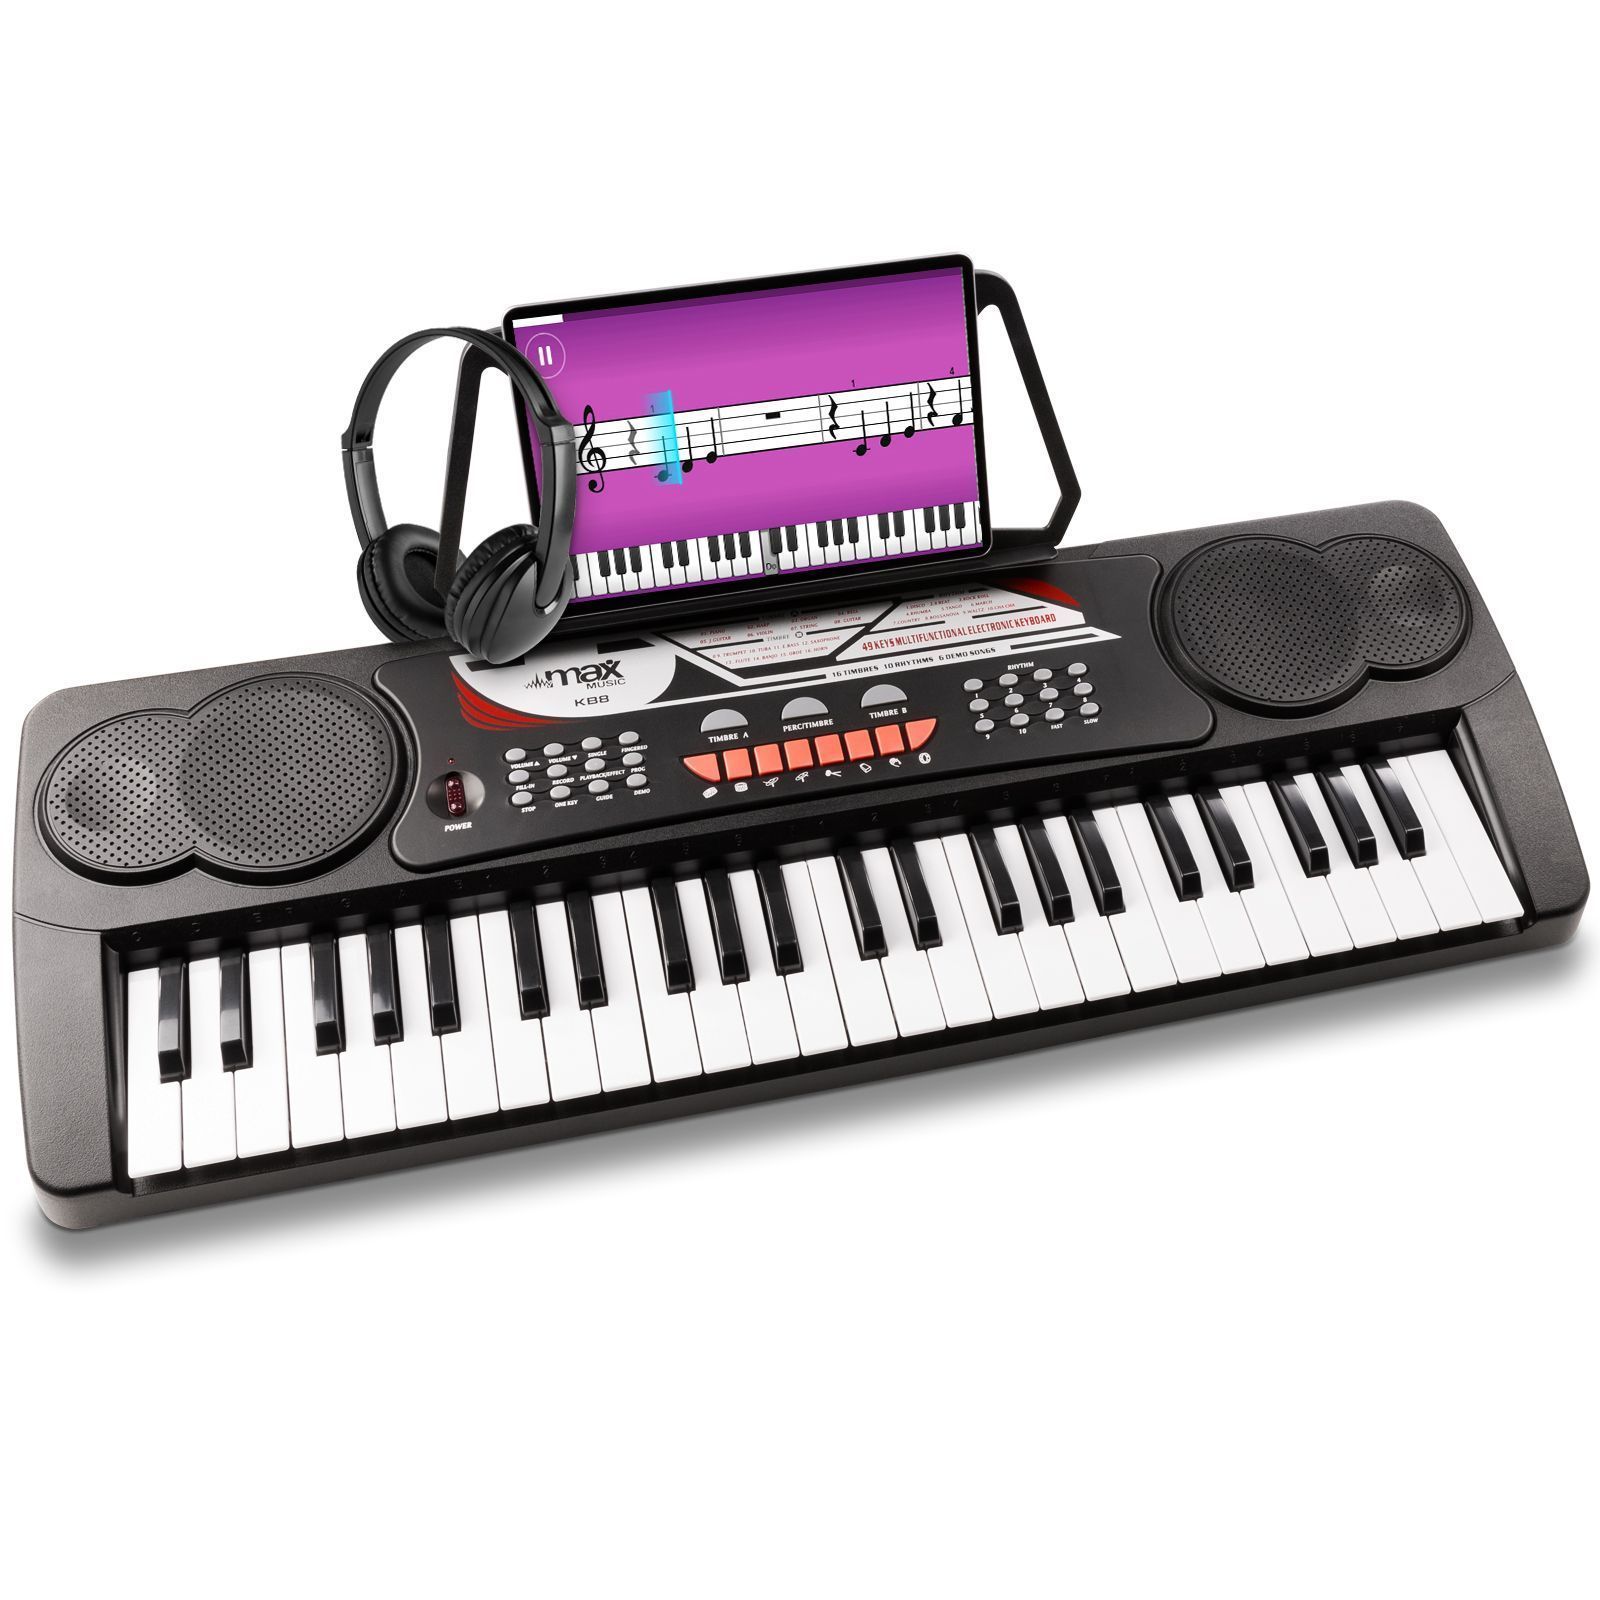 Doe mee BES Pakket MAX KB8 keyboard piano met 49 toetsen en koptelefoon kopen?